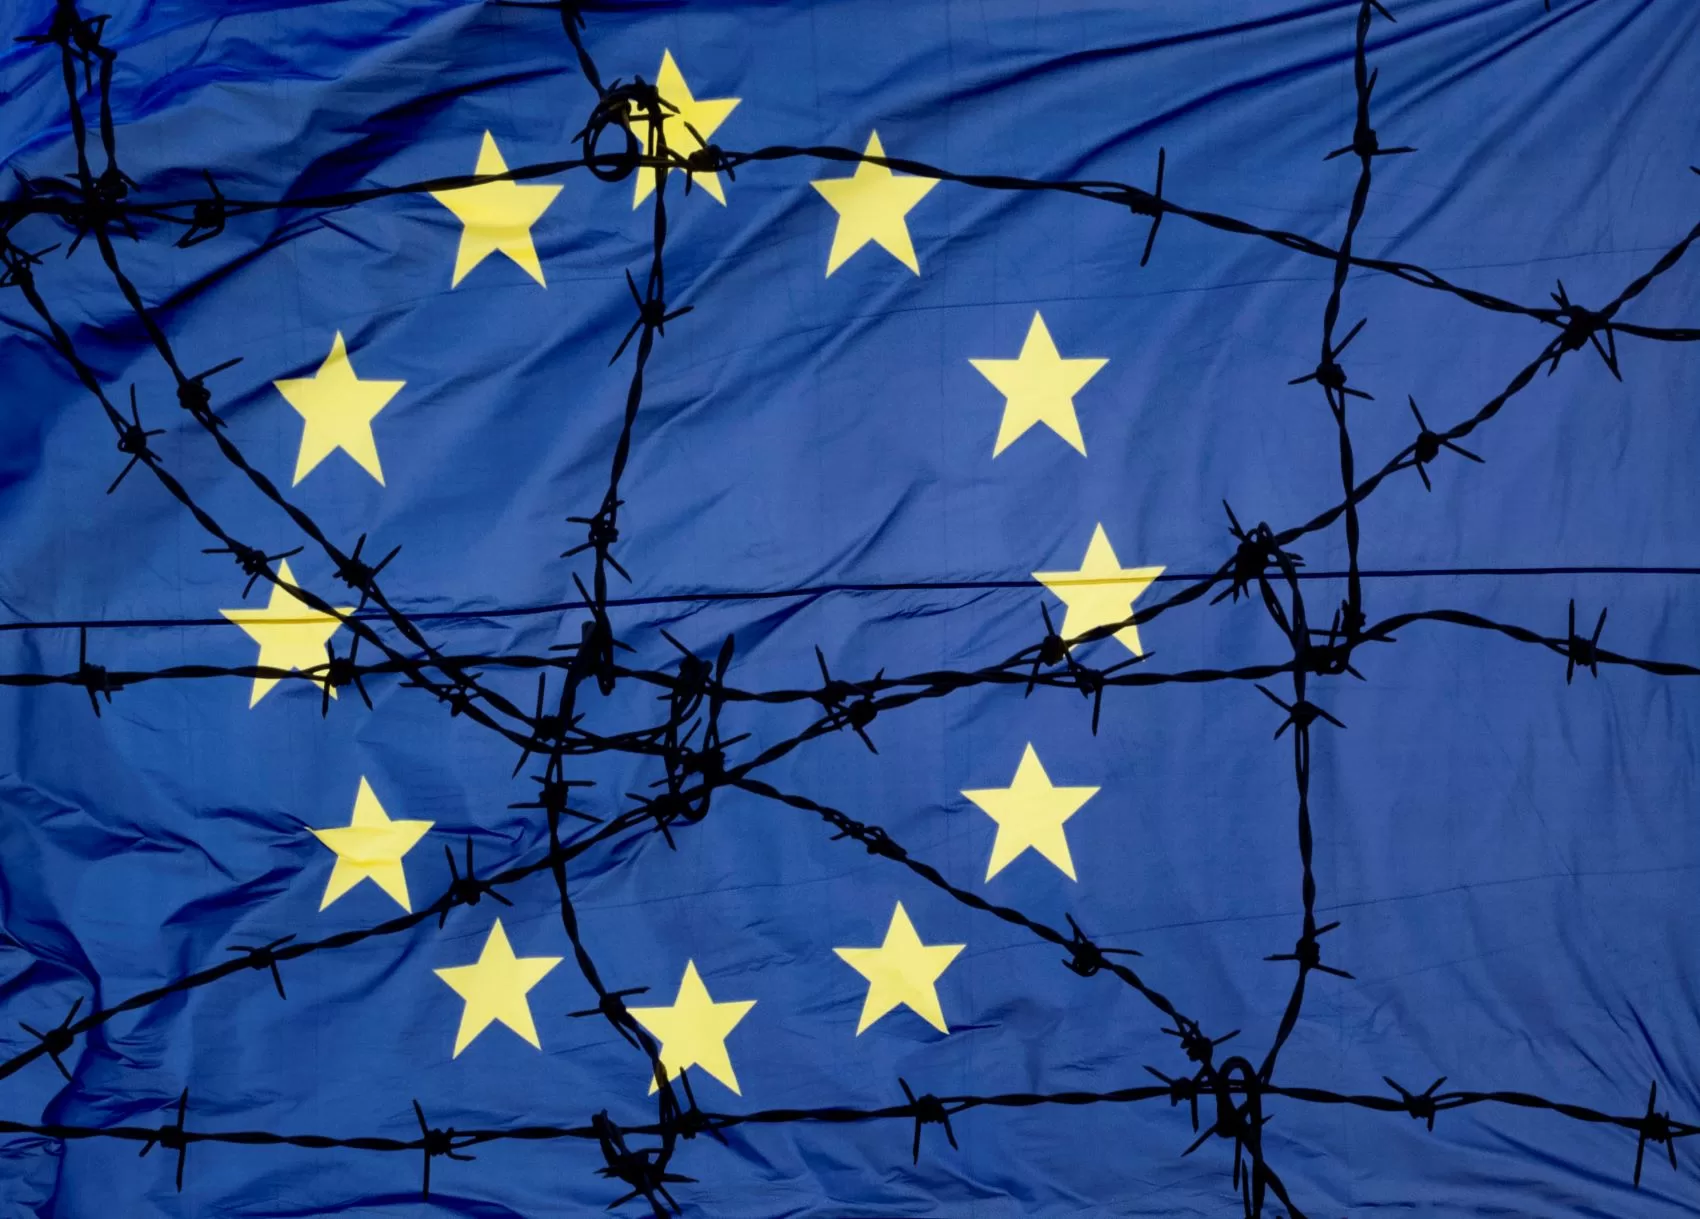 Bolsas da Europa fecham em queda, após dados indicarem incertezas sobre economia